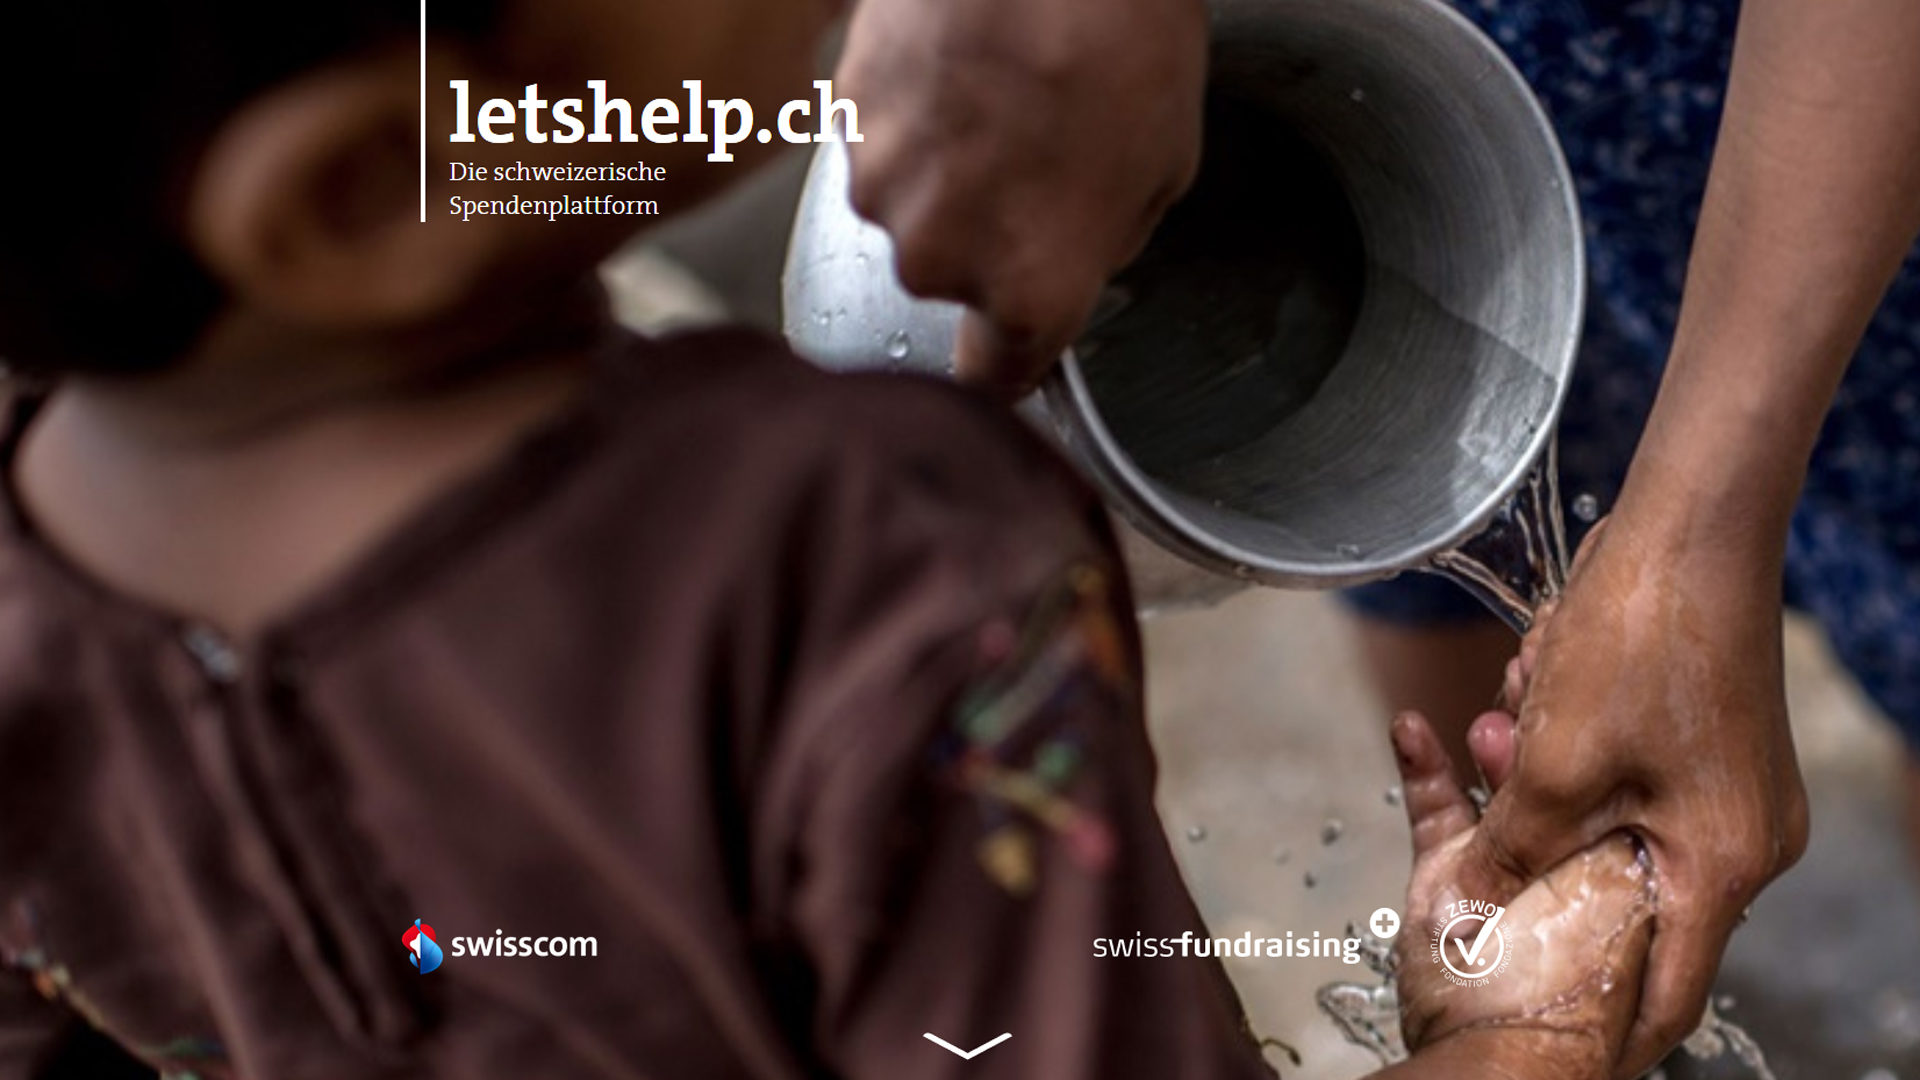 letshelp.ch – Die schweizerische Spendenplattform